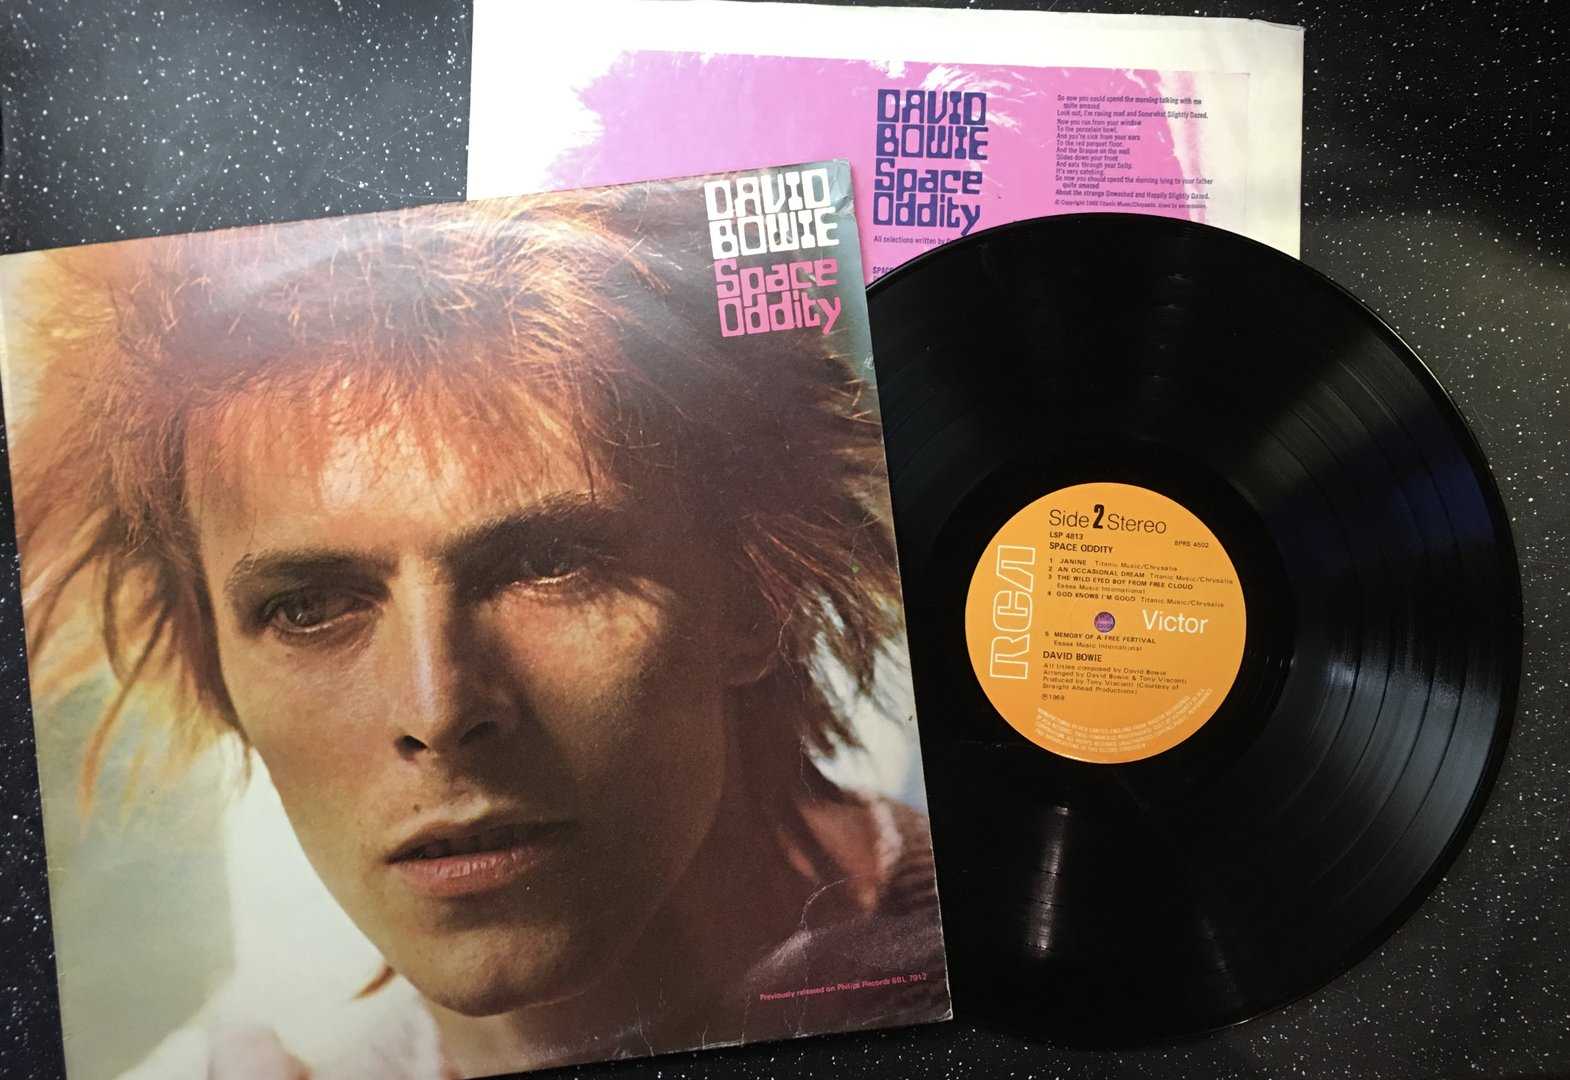 David bowie's space oddity. David Bowie 1969 album. David Bowie Space Oddity 1969. David Bowie 1969 album Cover. Боуи Space Oddity.